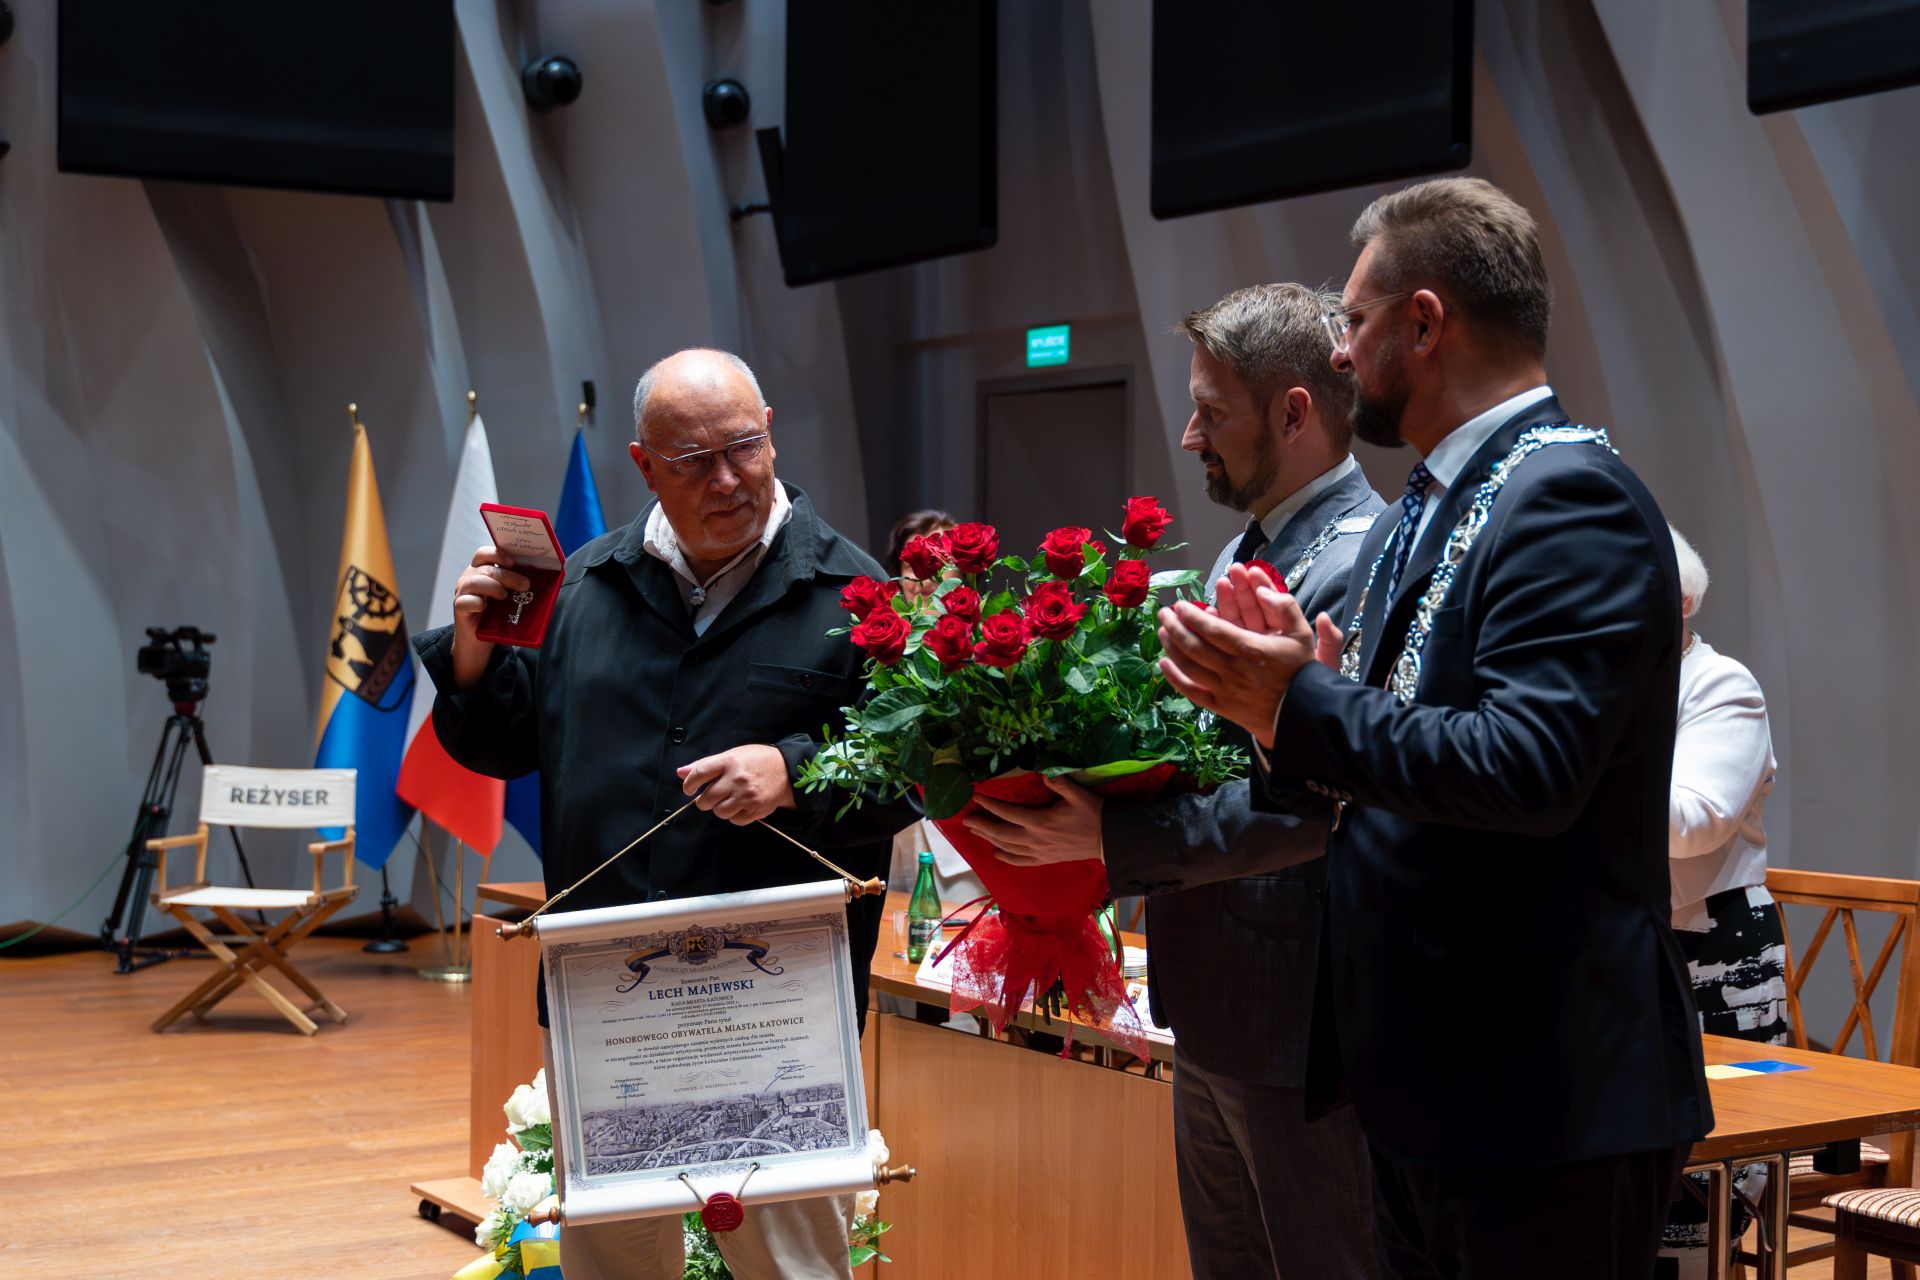 Uroczysta sesja Rady Miasta Katowice z okazji 158. rocznicy nadania praw miejskich